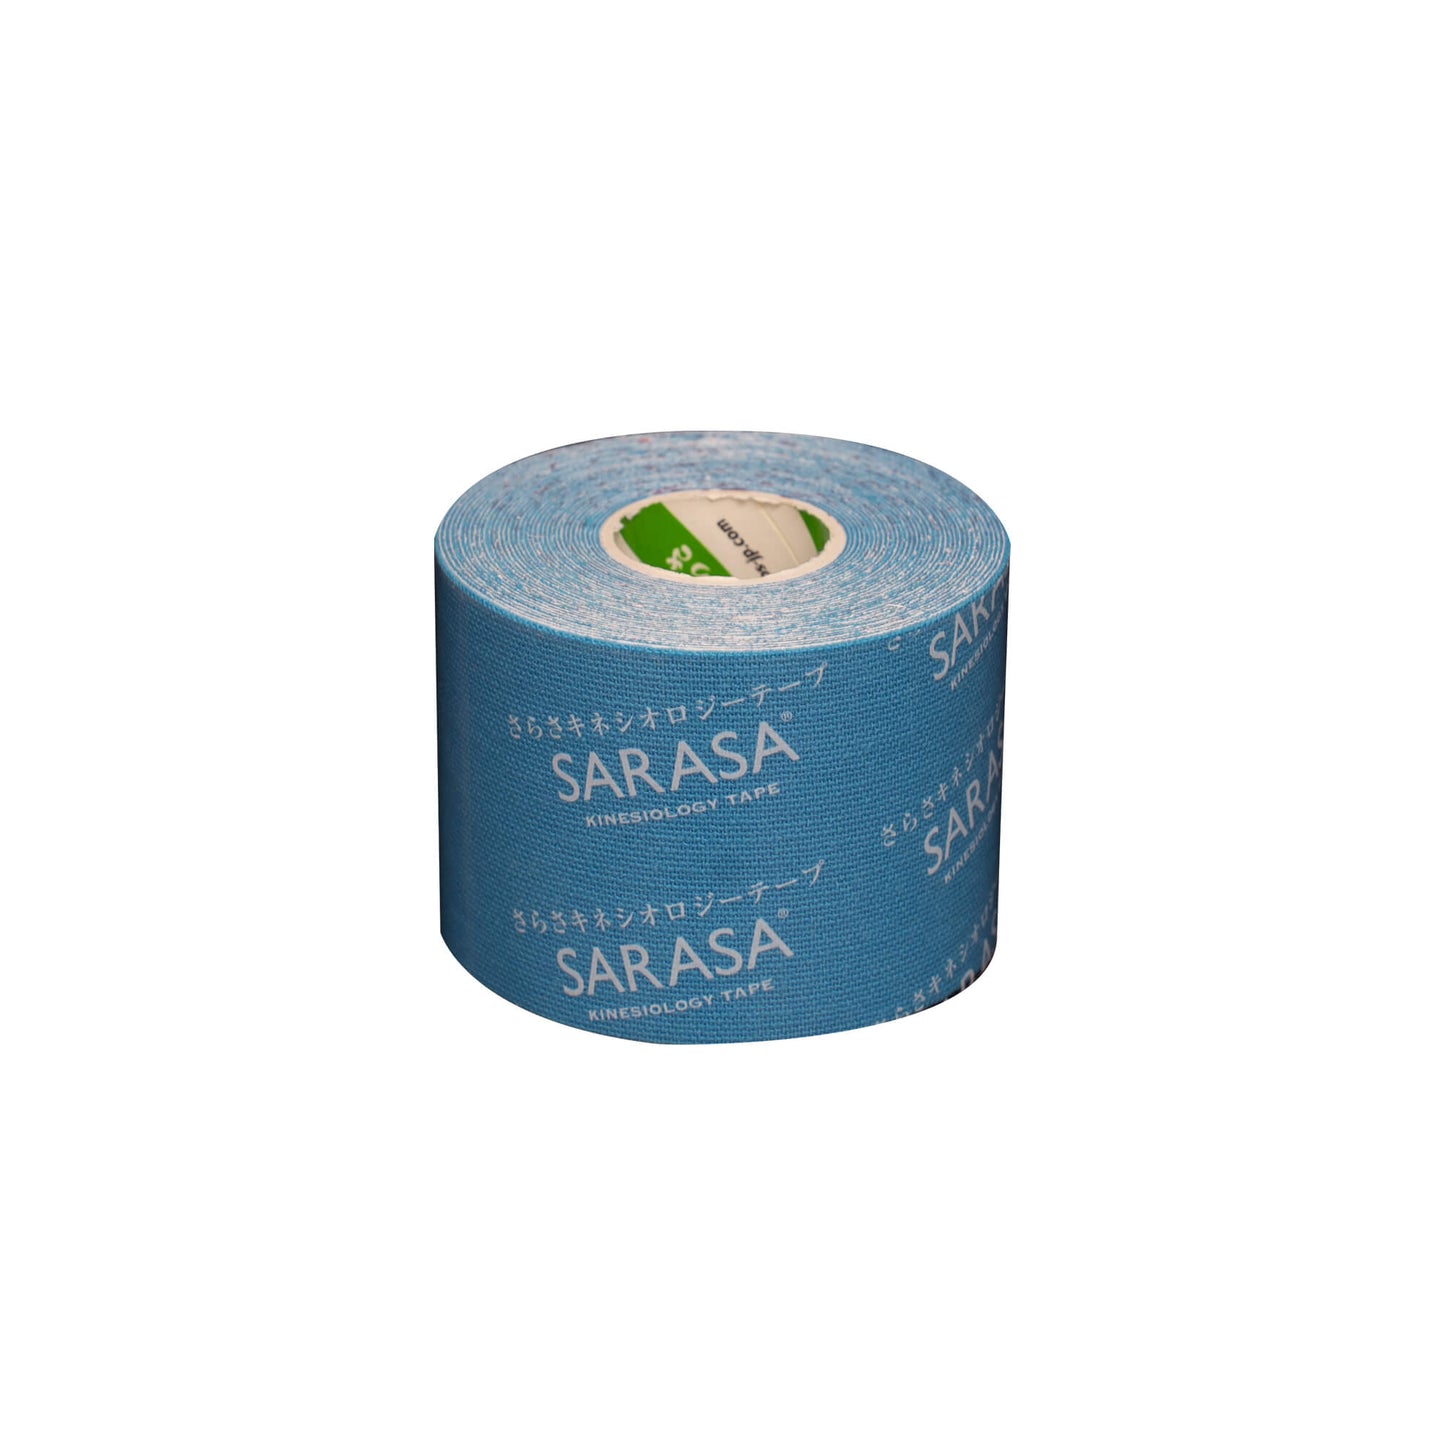 【お得なまとめ買い】SARASA キネシオロジーテープ カラー6巻 10箱セット